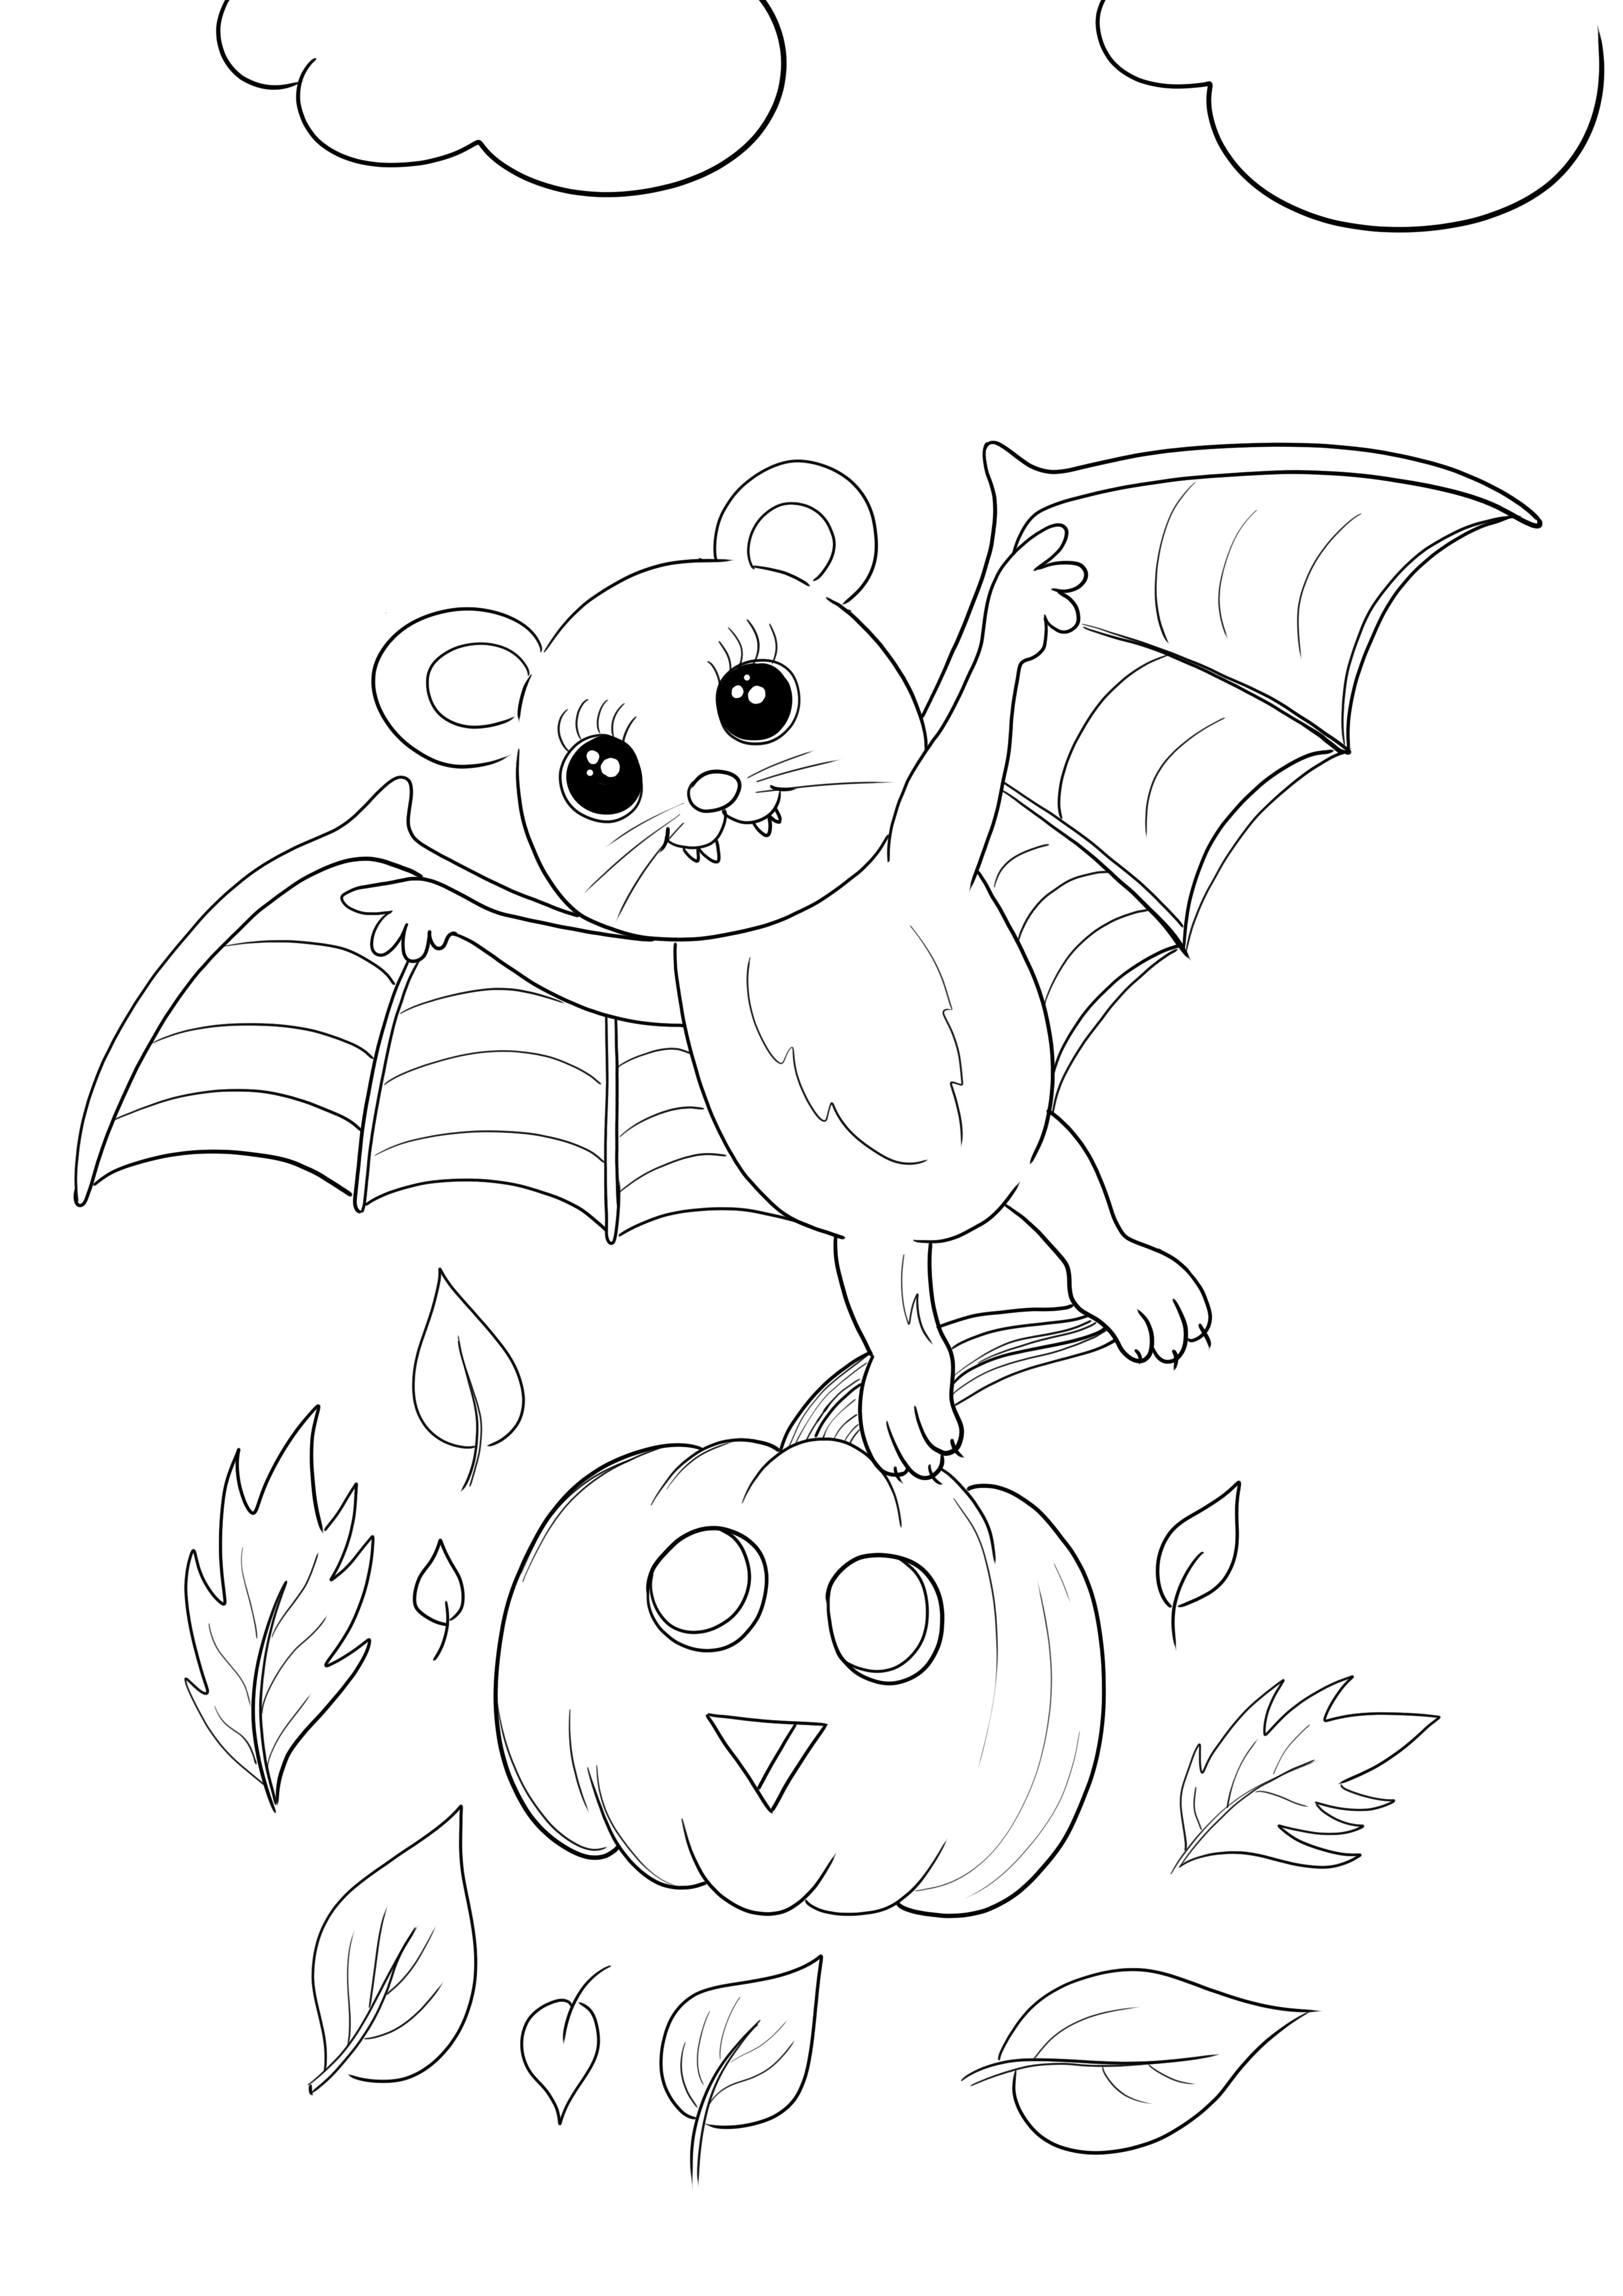 Dibujo de calabaza y murciélago volador de Halloween para colorear e imprimir gratis